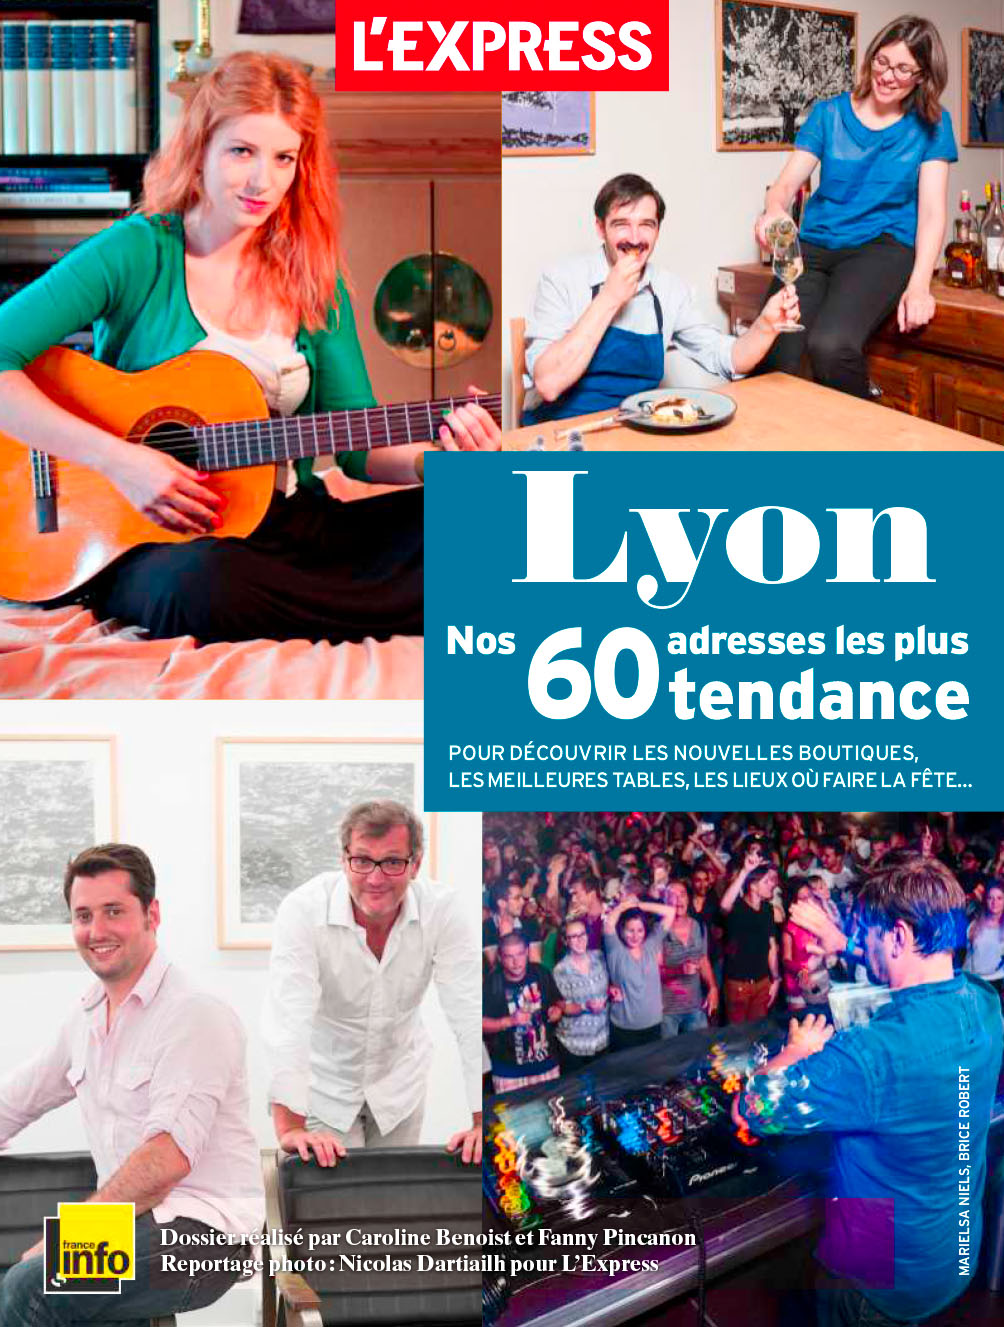 L'Express Tendance Lyon - 2013